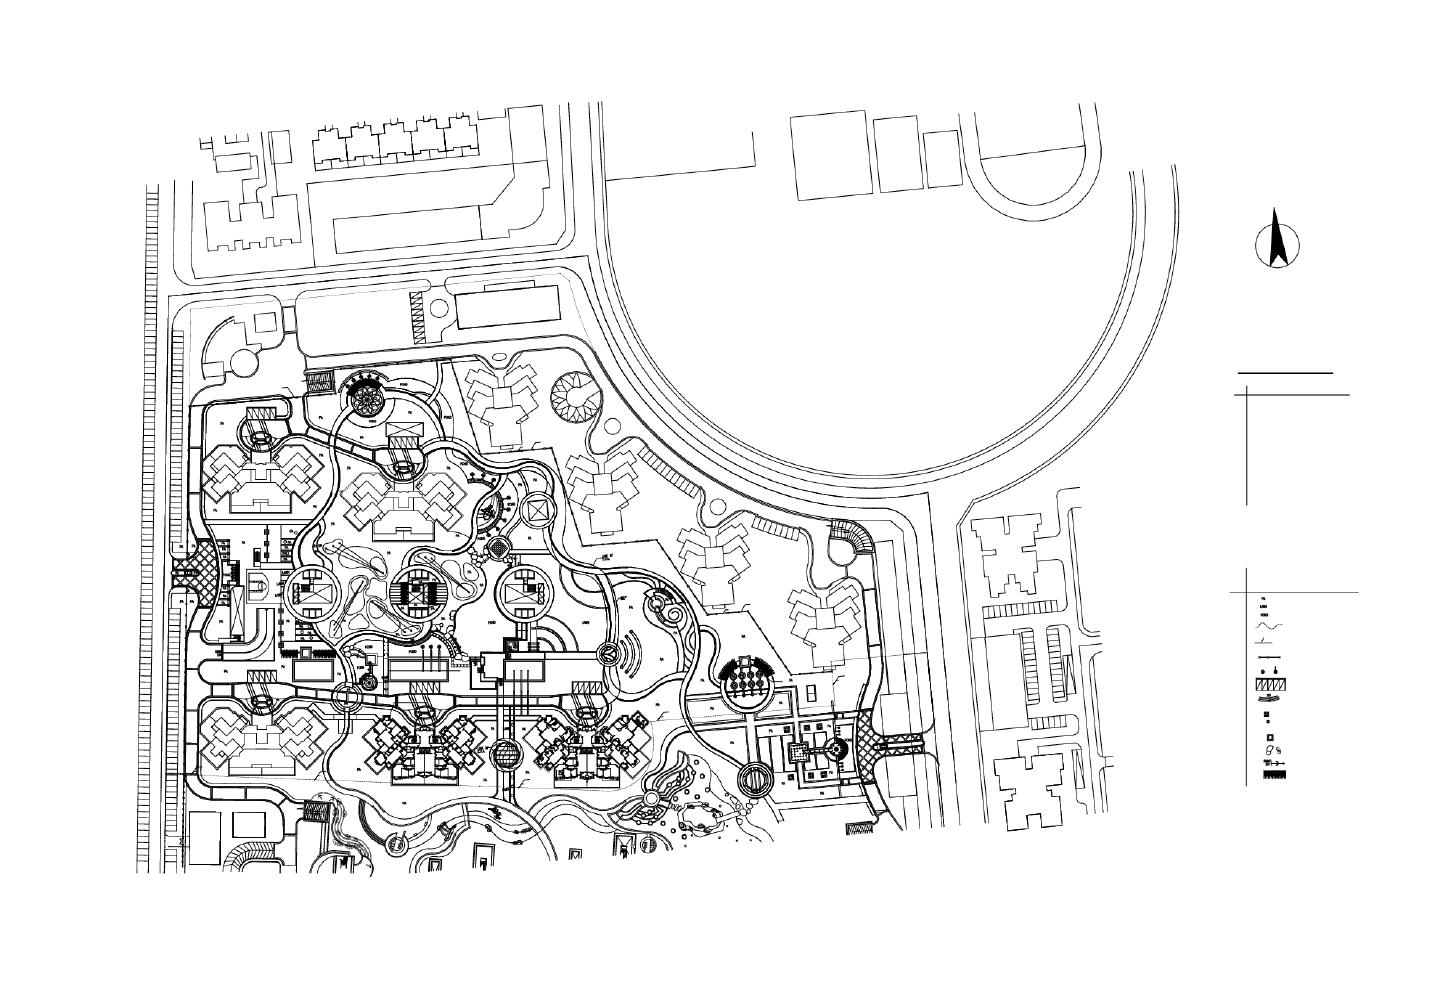 某某北京某某星园二期施工图-索引图平面图CAD图